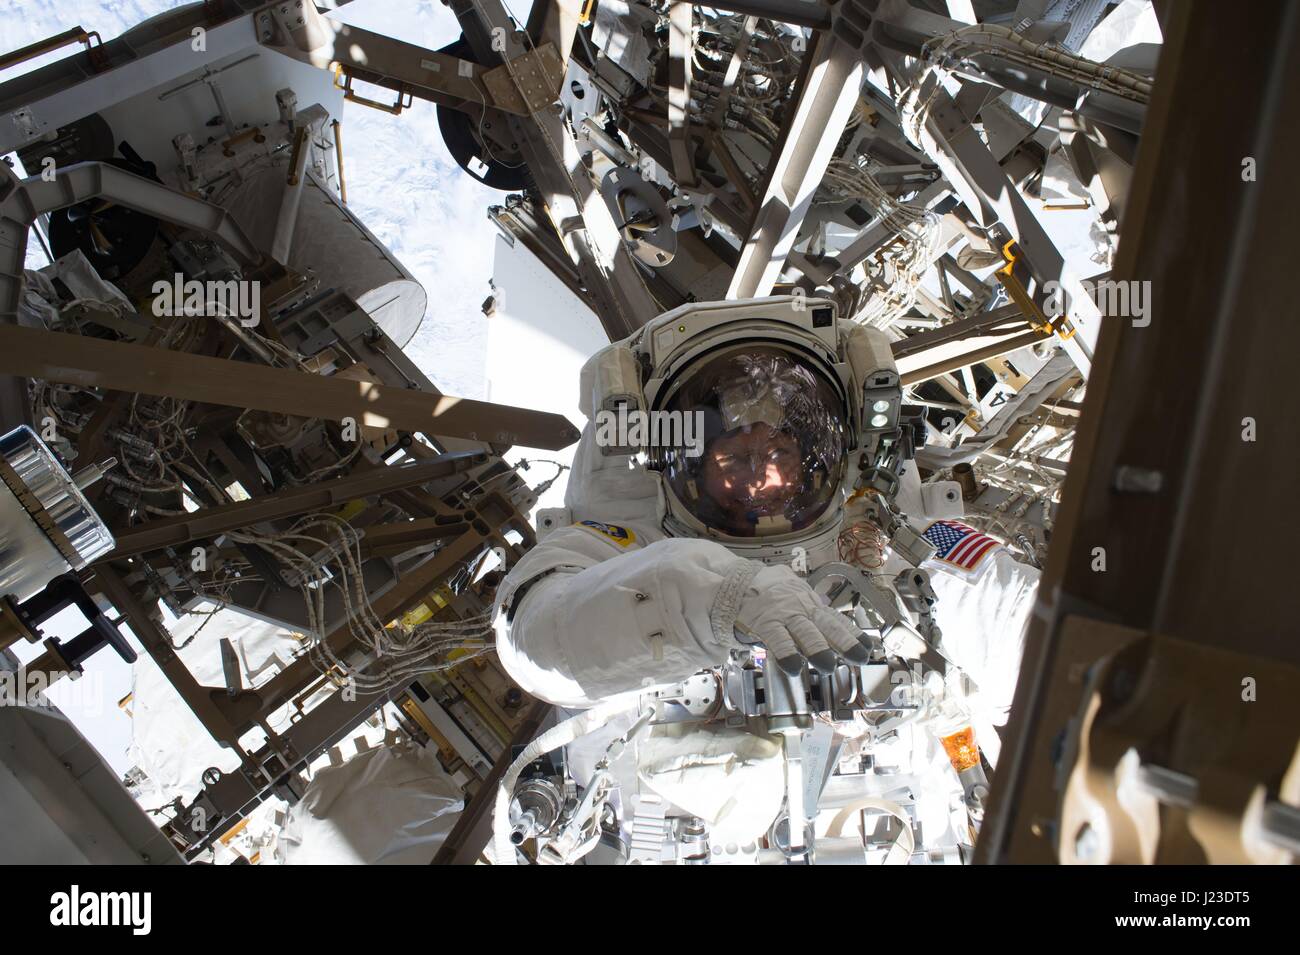 NASA-Expedition 50 erstklassige Besatzung Astronaut, die amerikanische Peggy Whitson auf der internationalen Raumstation in der Erdumlaufbahn während einem Weltraumspaziergang 6. Januar 2017 funktioniert.    (Foto von der NASA über Planetpix) Stockfoto